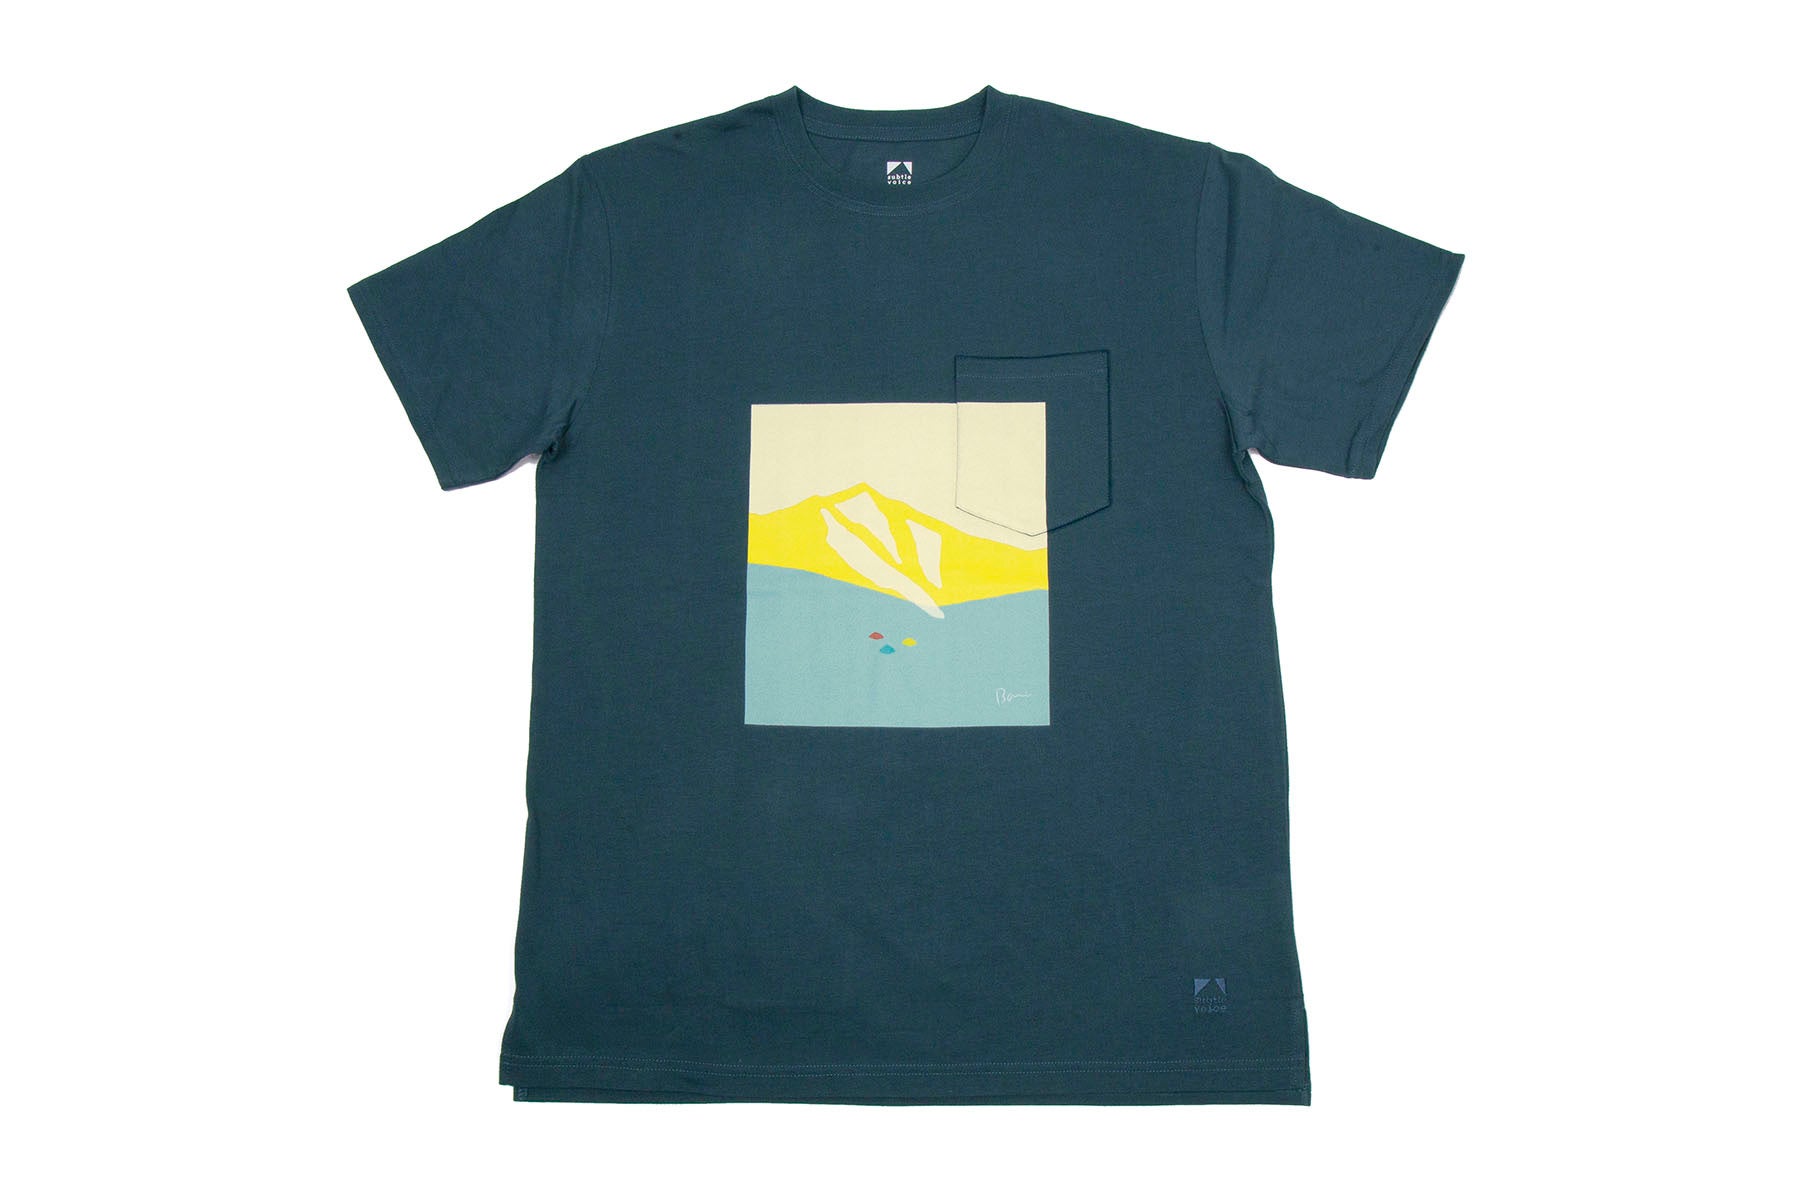 登山アパレルの本質的な価値を追求する日本発のブランド「サトルボイス」から、天然コットン本来の快適性と機能性を最大限に引き出したパフォーマンスTシャツの新モデルが登場。のサブ画像10